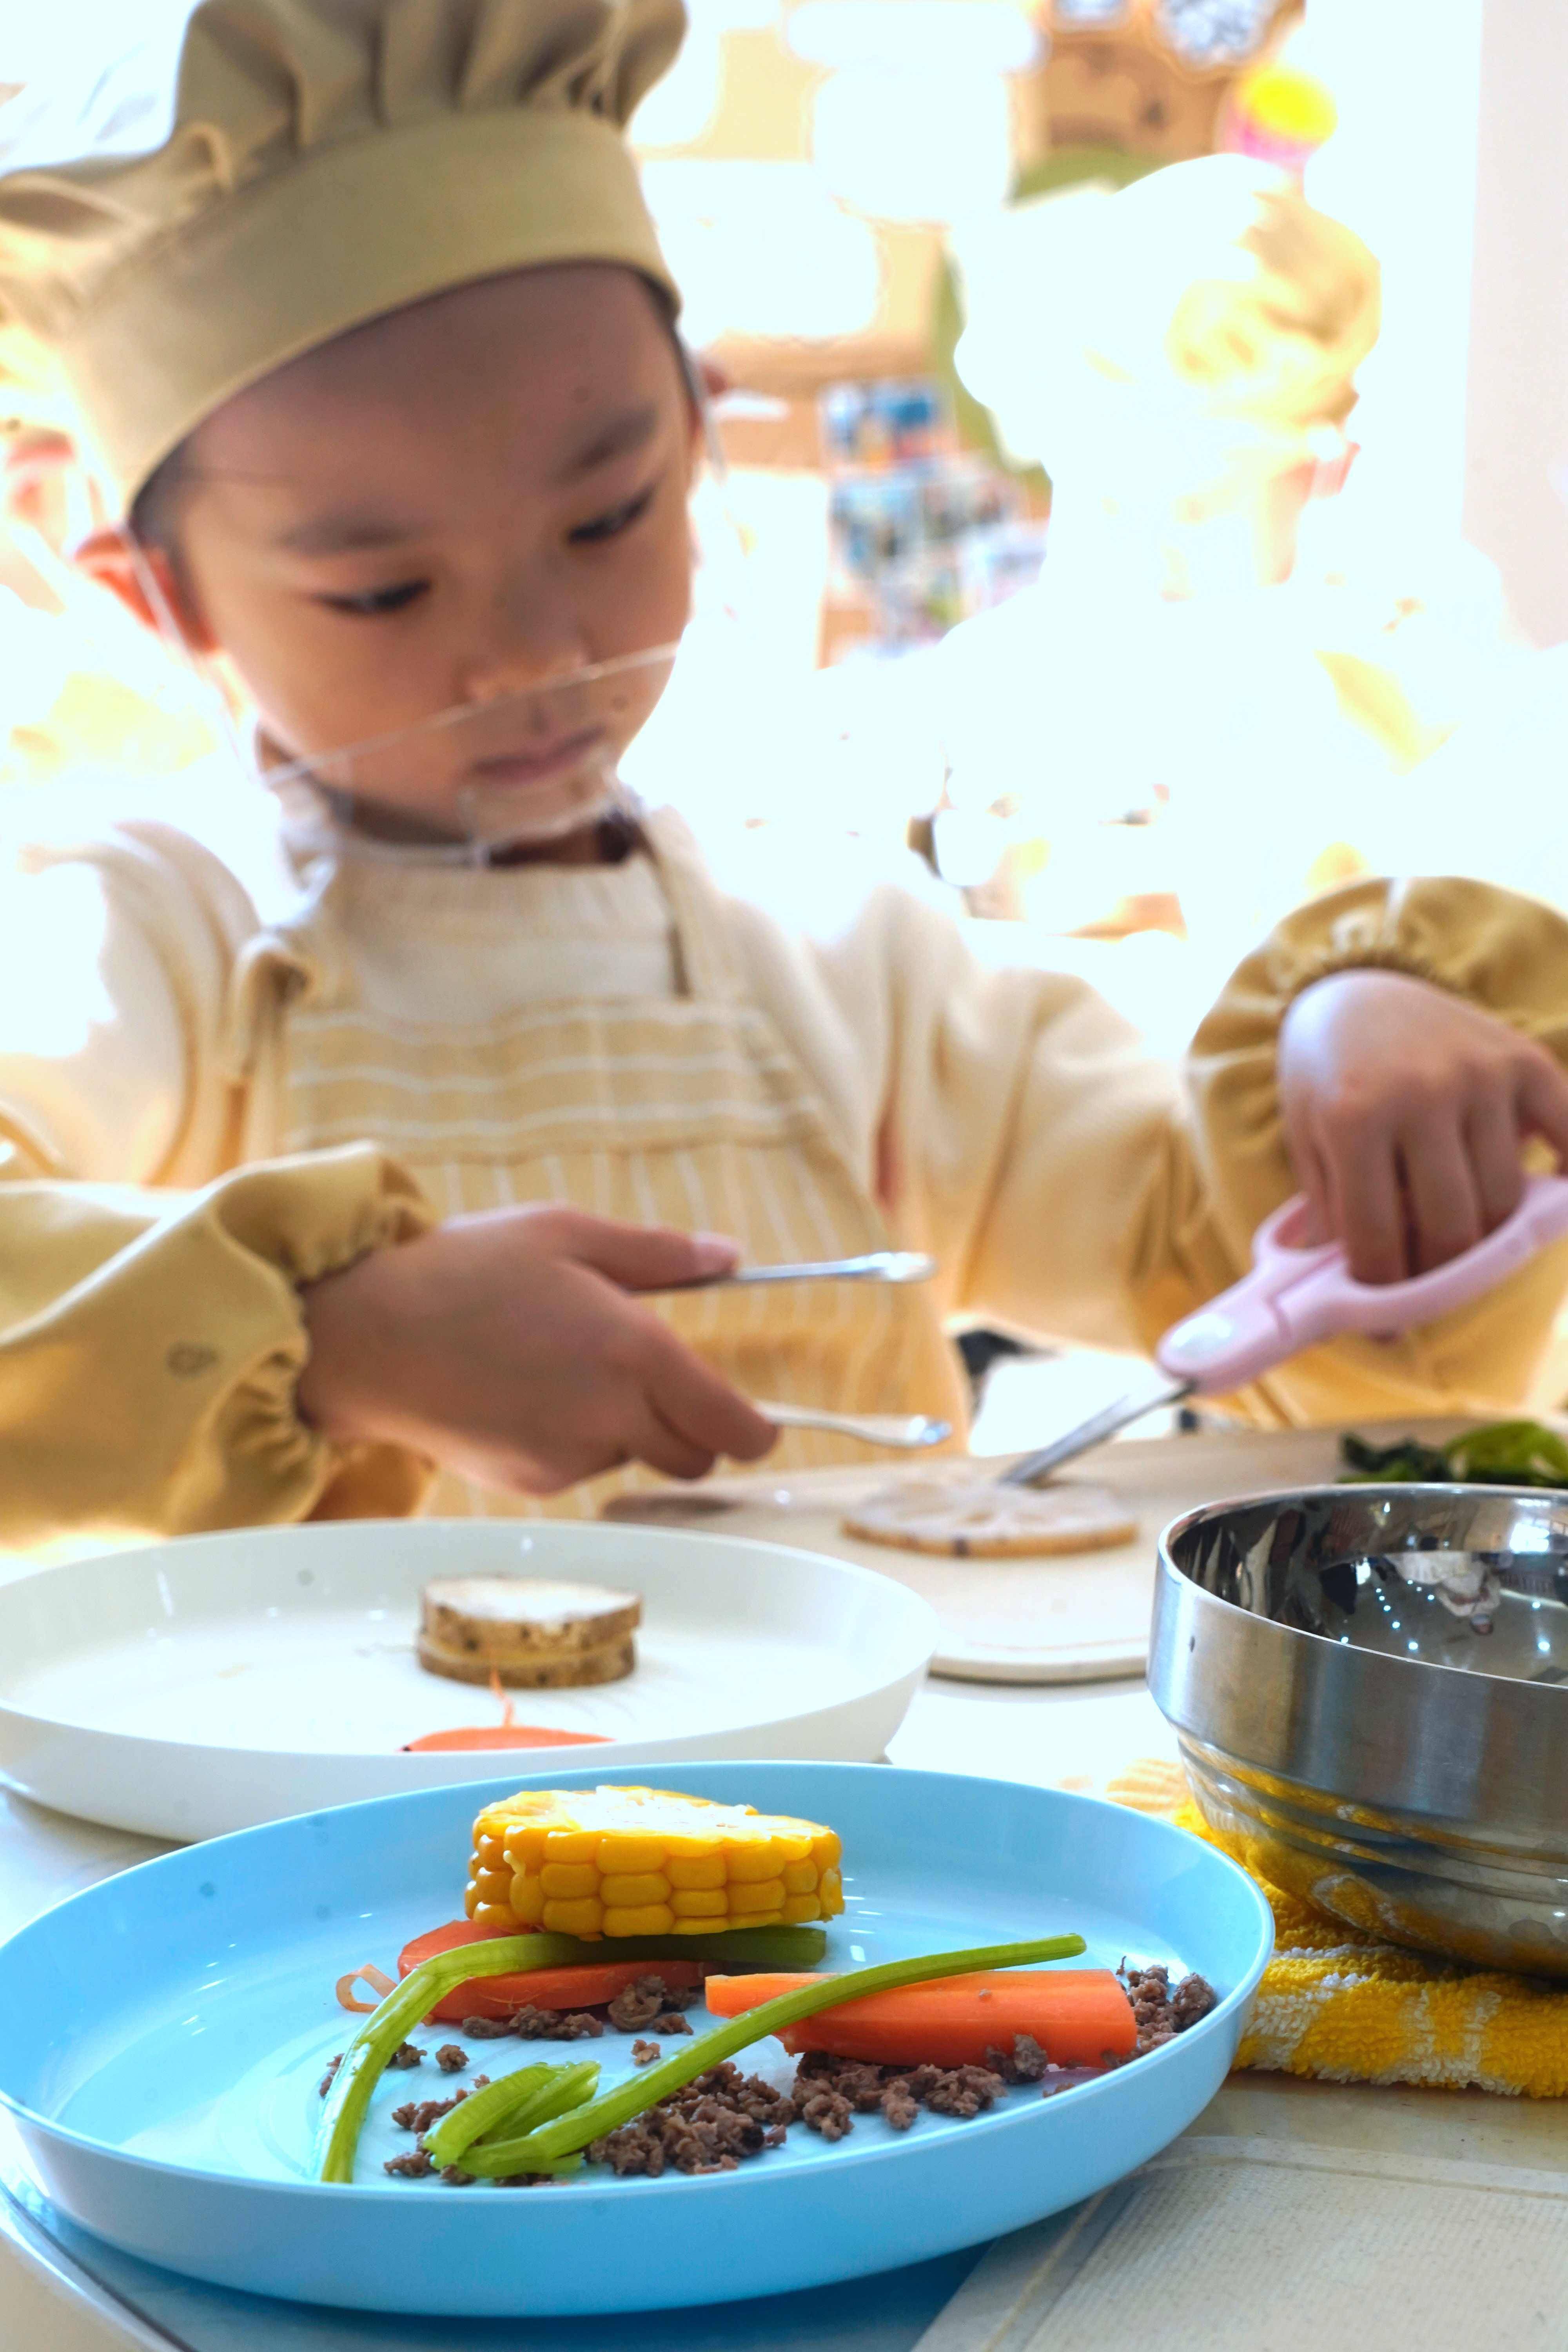 拔萝卜|每天“必修”挖红薯拔萝卜，还亲手调营养粥、制丝瓜筋……这里的幼儿都是“健康管理达人”，幼儿园食育可以如此有趣